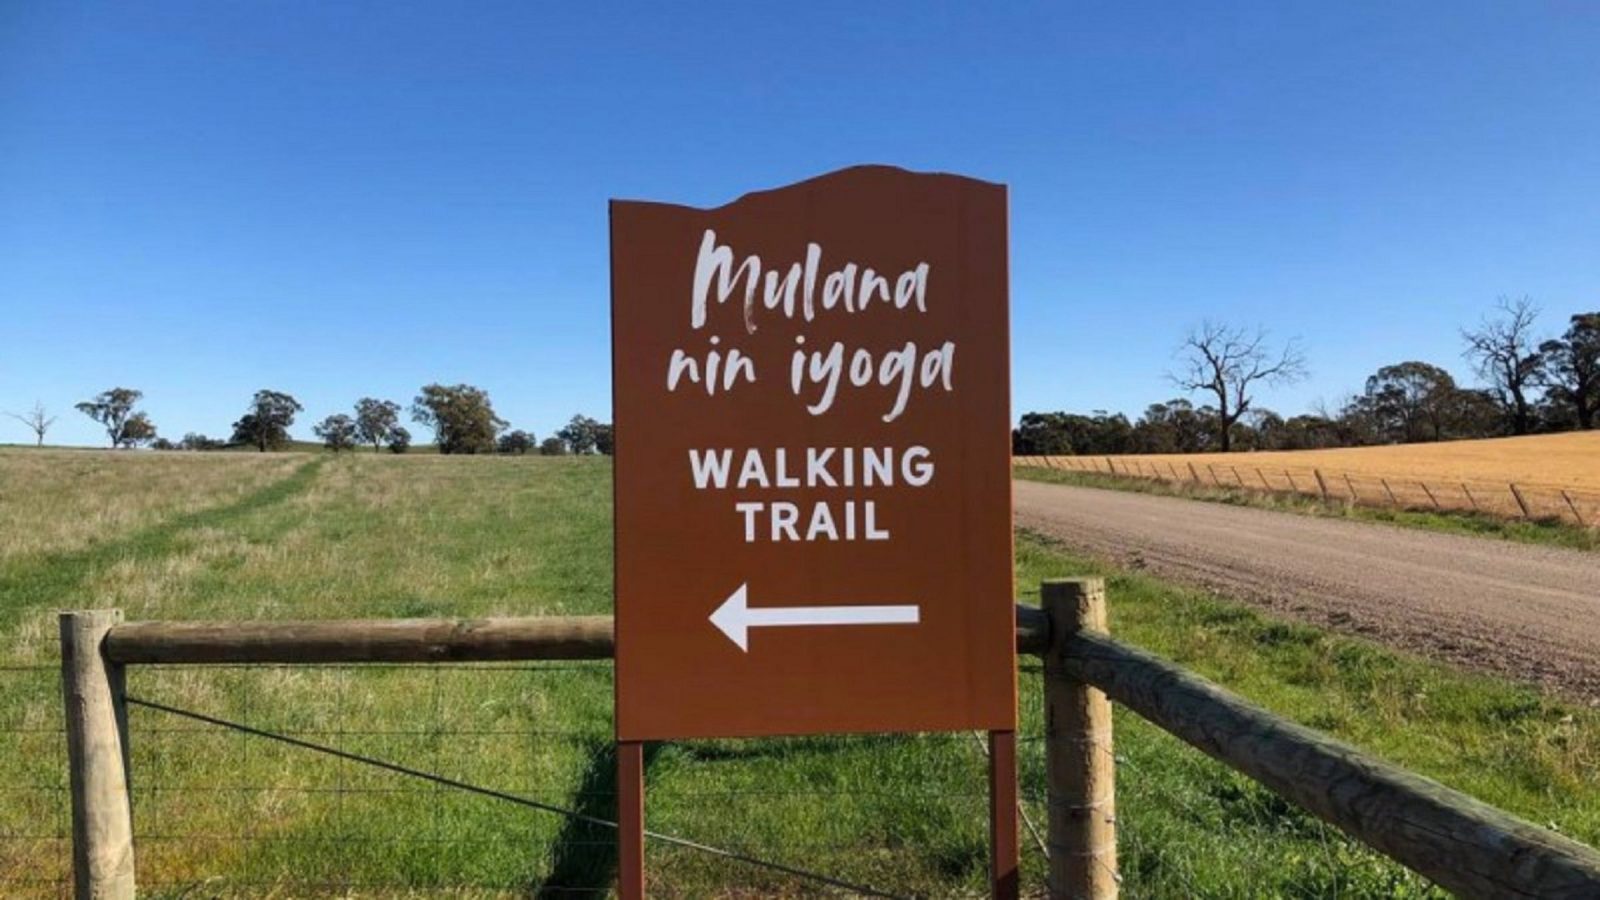 Mulana nin iyoga walking trail sign at trail head